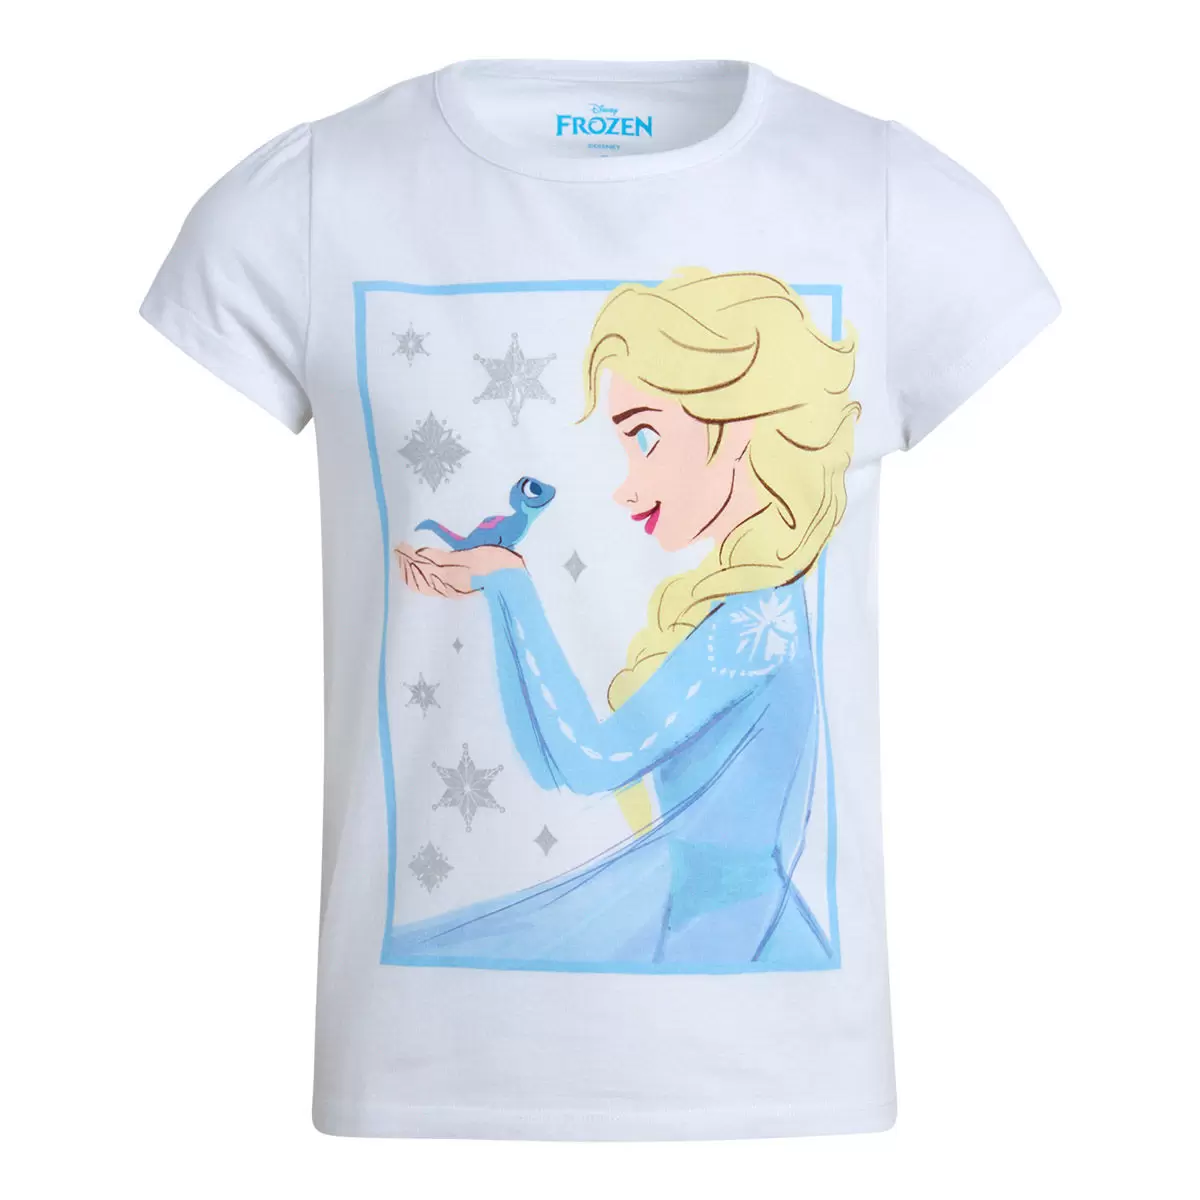 兒童卡通圖案短袖上衣四件組 Frozen 7T